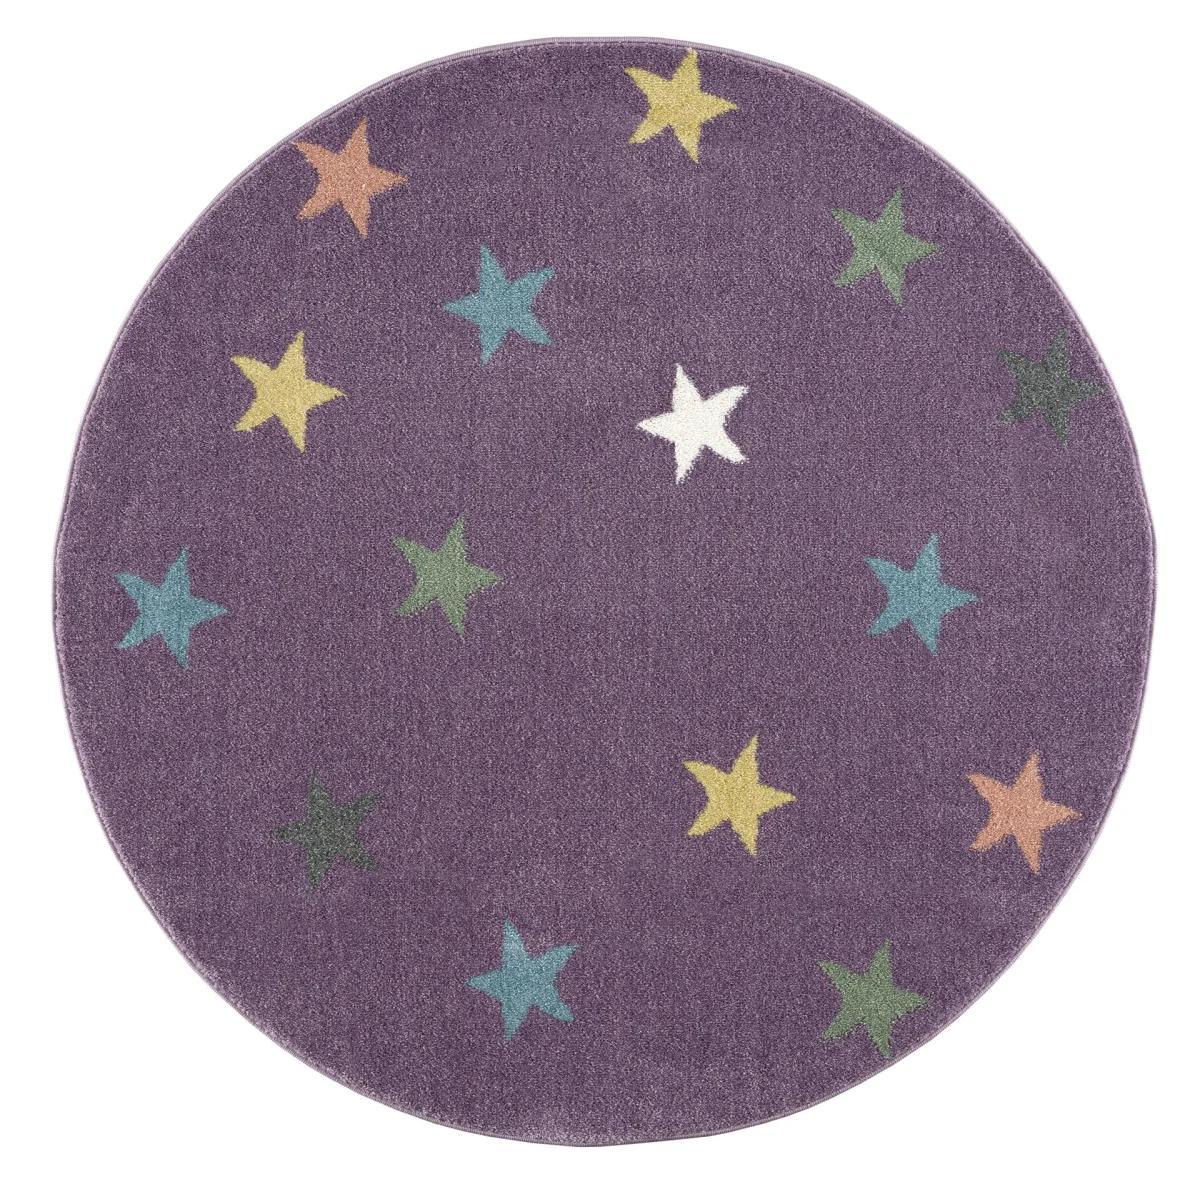 Dywan dziecięcy krągły Violet Stars Round 133 cm do pokoju dziecięcego fioletowy w gwiazdki nr. 3